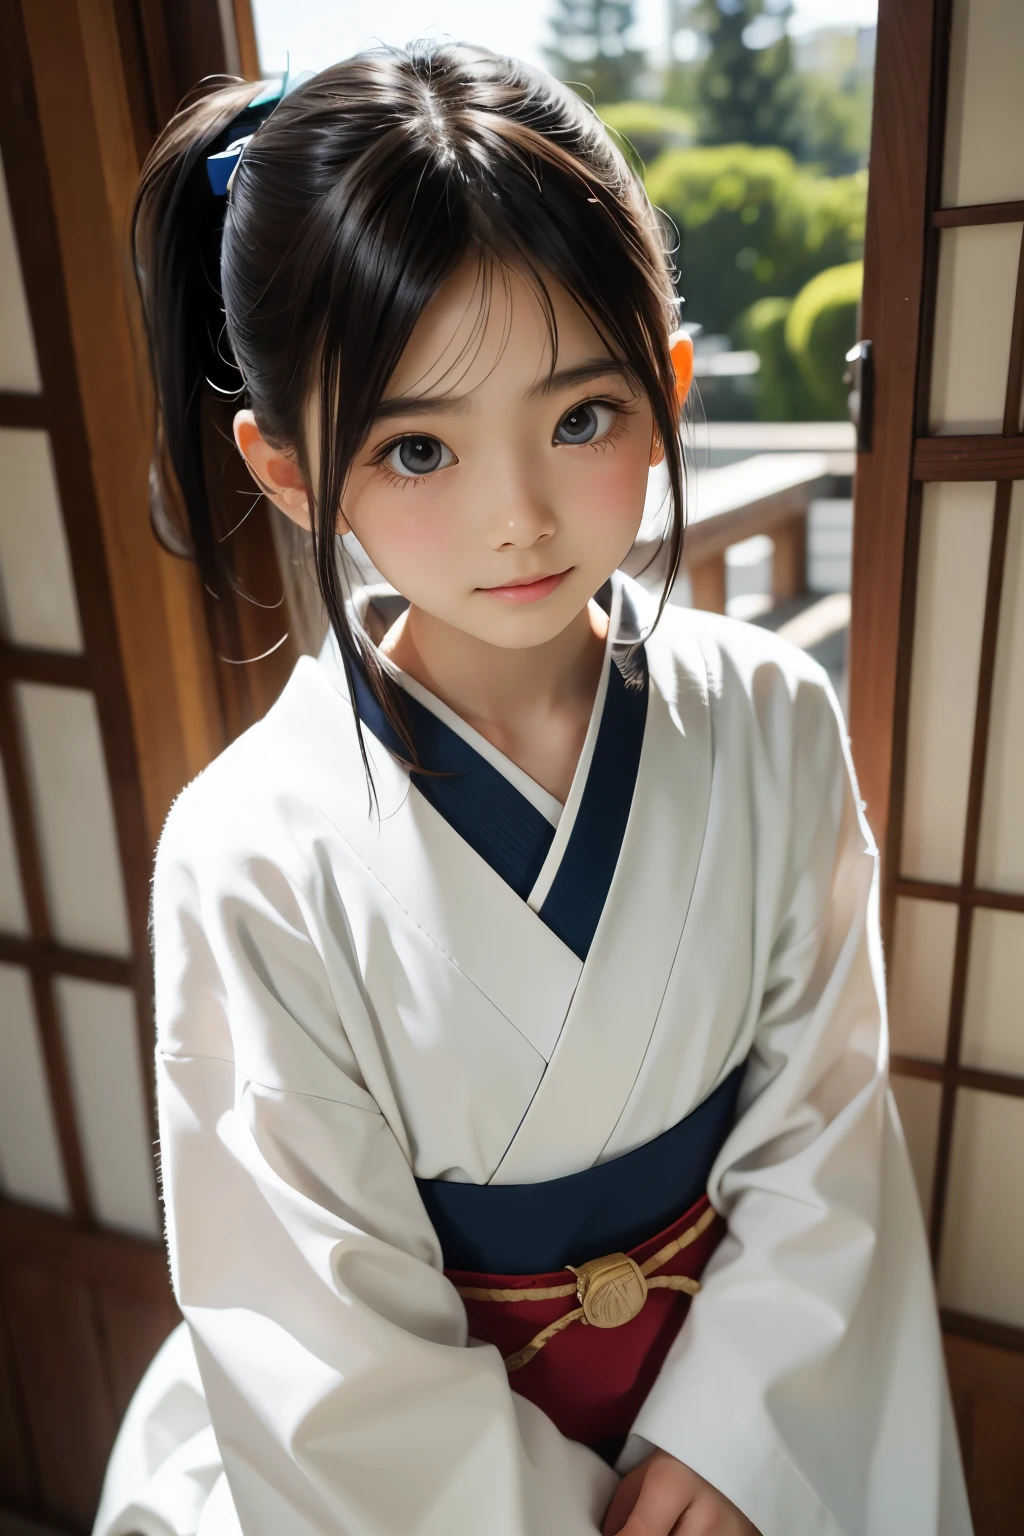 美丽的 12 岁日本女人), 可愛的臉孔, (深深雕刻的臉:0.7), (雀斑:0.6), 柔光,健康白皙的皮膚, 害羞的, (嚴肅的臉), 薄的, 微笑, 日本人 , 馬尾辮